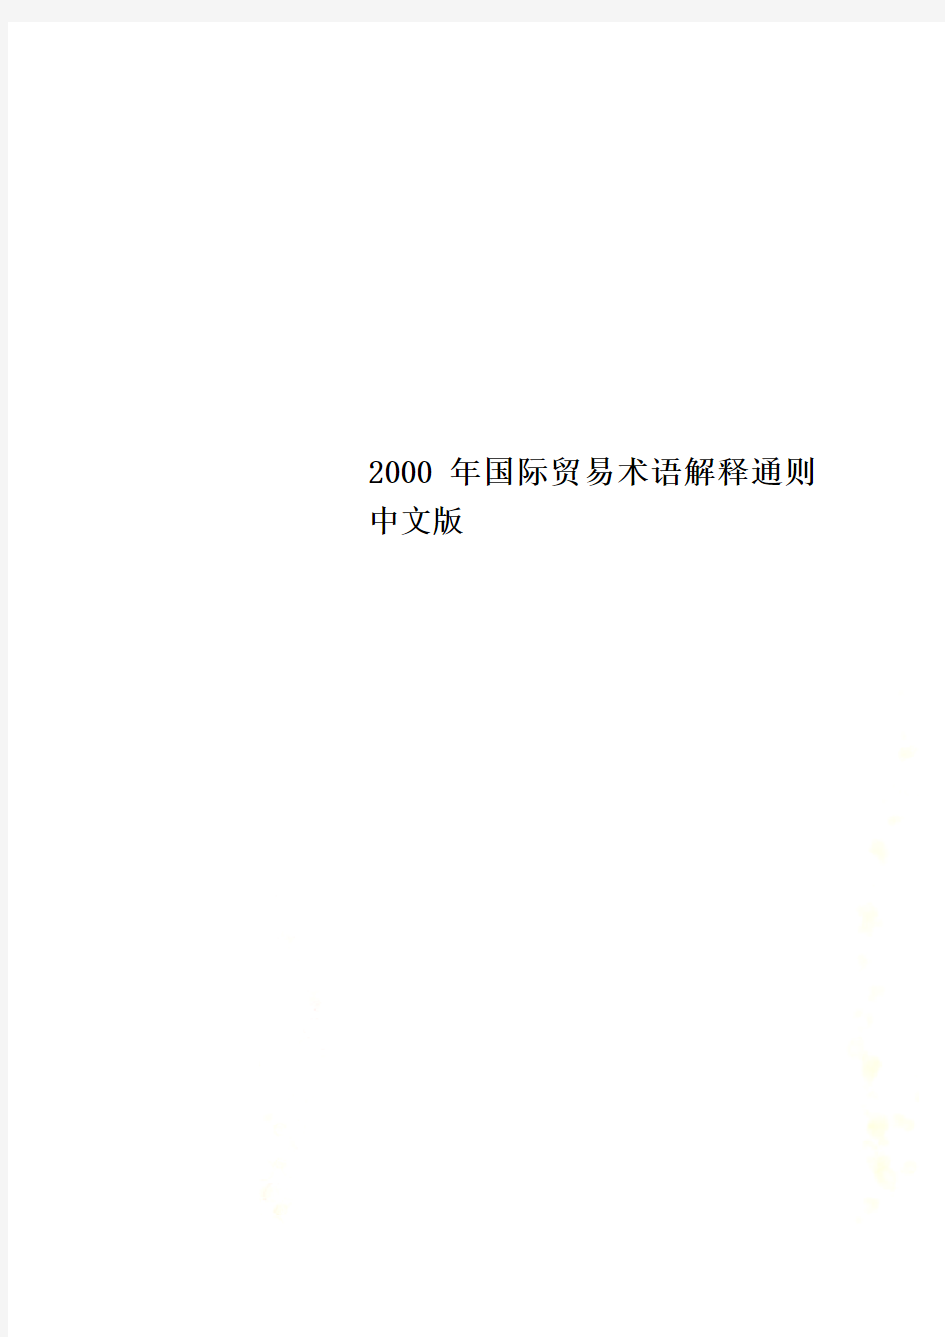 2000年国际贸易术语解释通则中文版